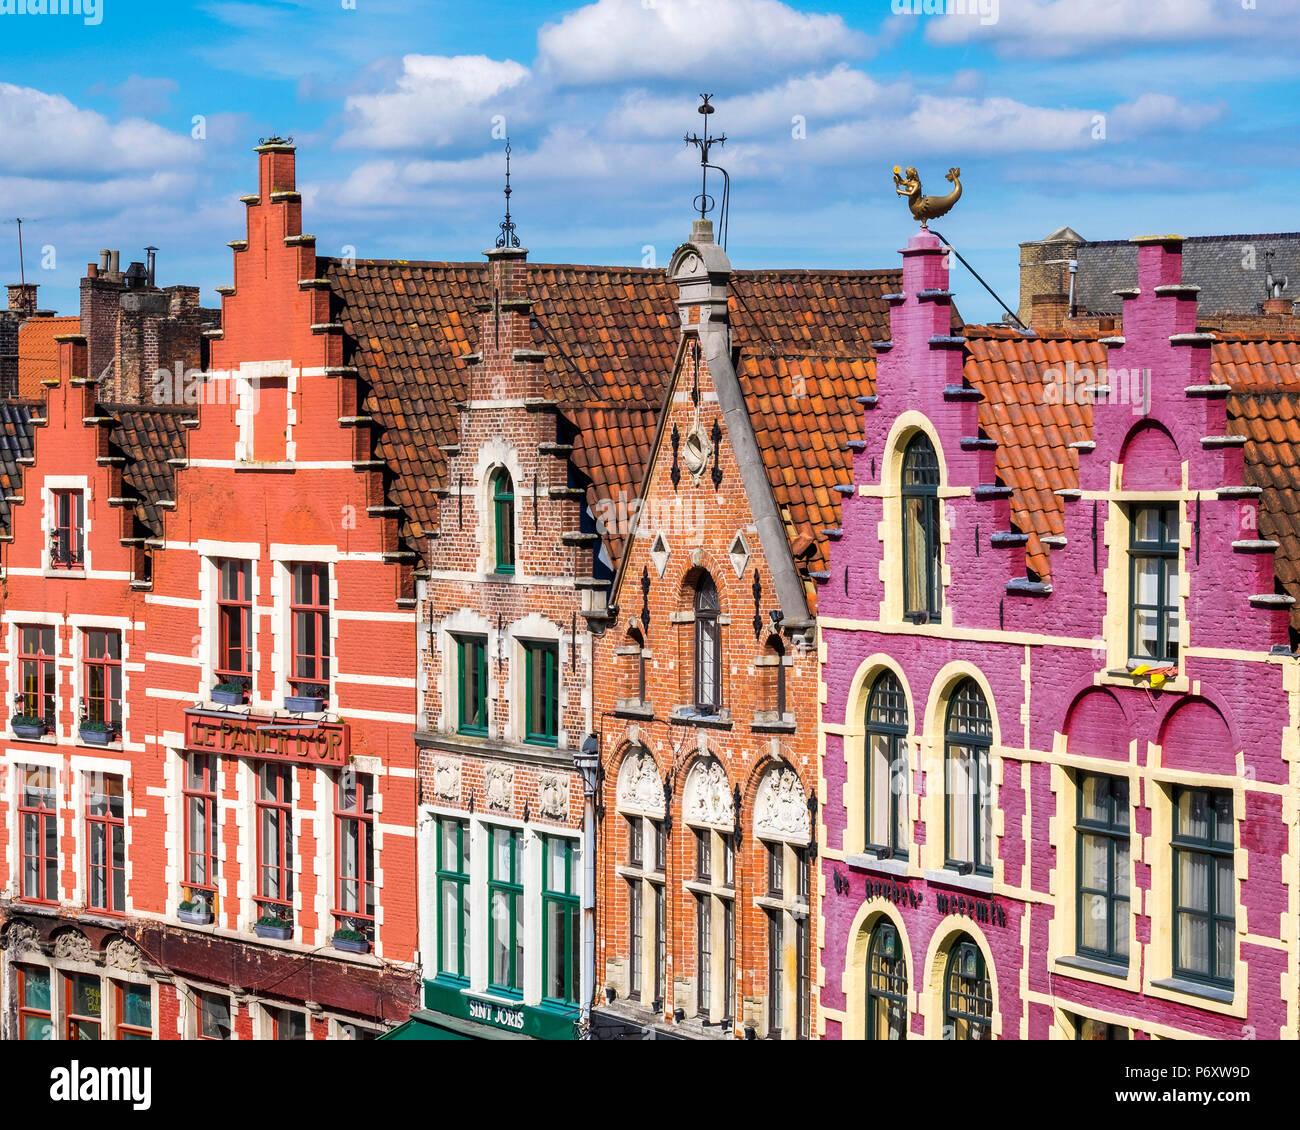 Belgium, West Flanders (Vlaanderen), Bruges (Brugge). Medieval guild houses on Markt square. Stock Photo